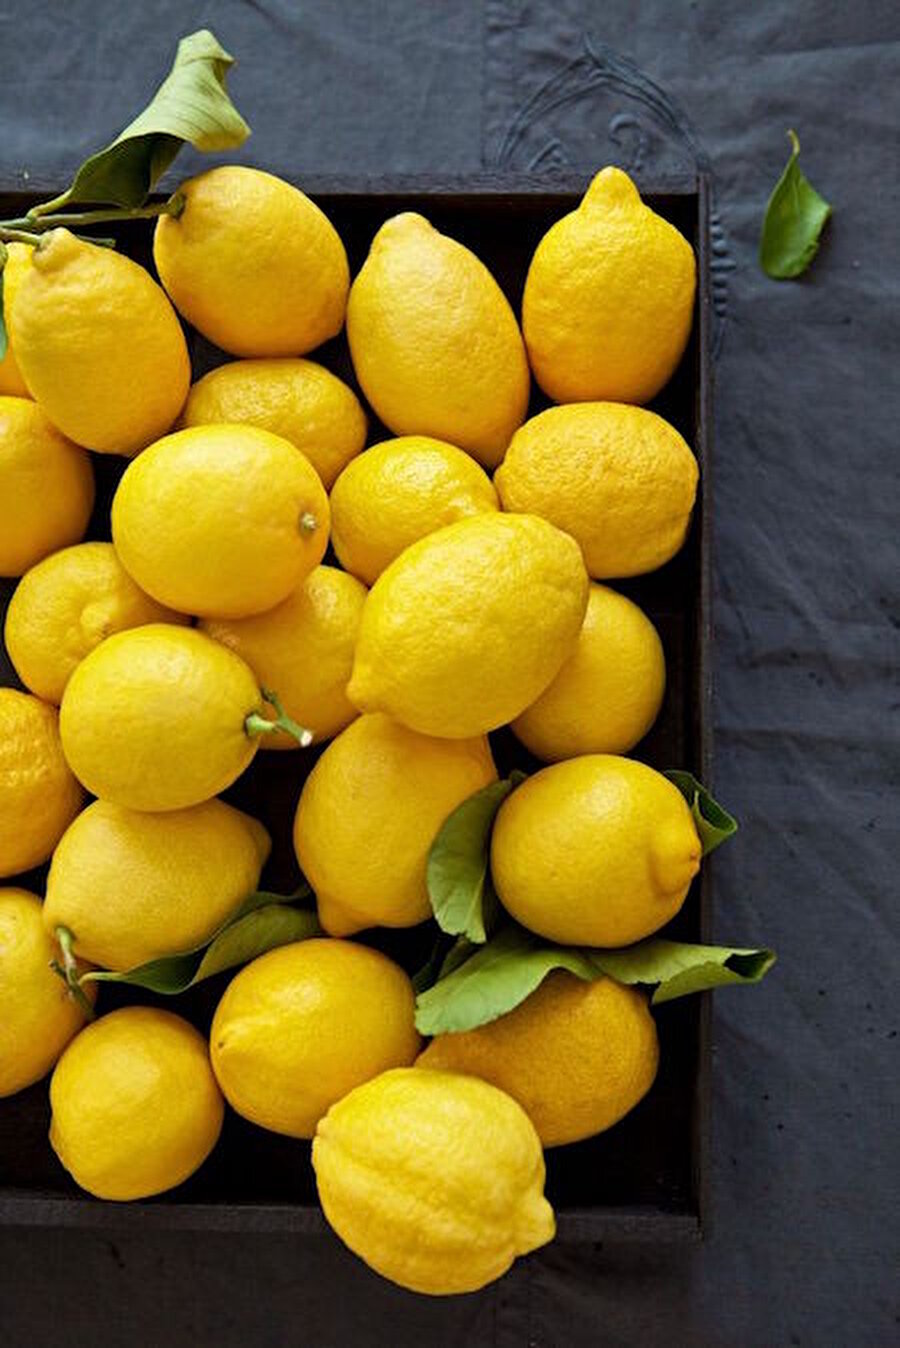 Limon
Bir parça limonla kaşıntının olduğu bölgeyi ovalamayı deneyin. 